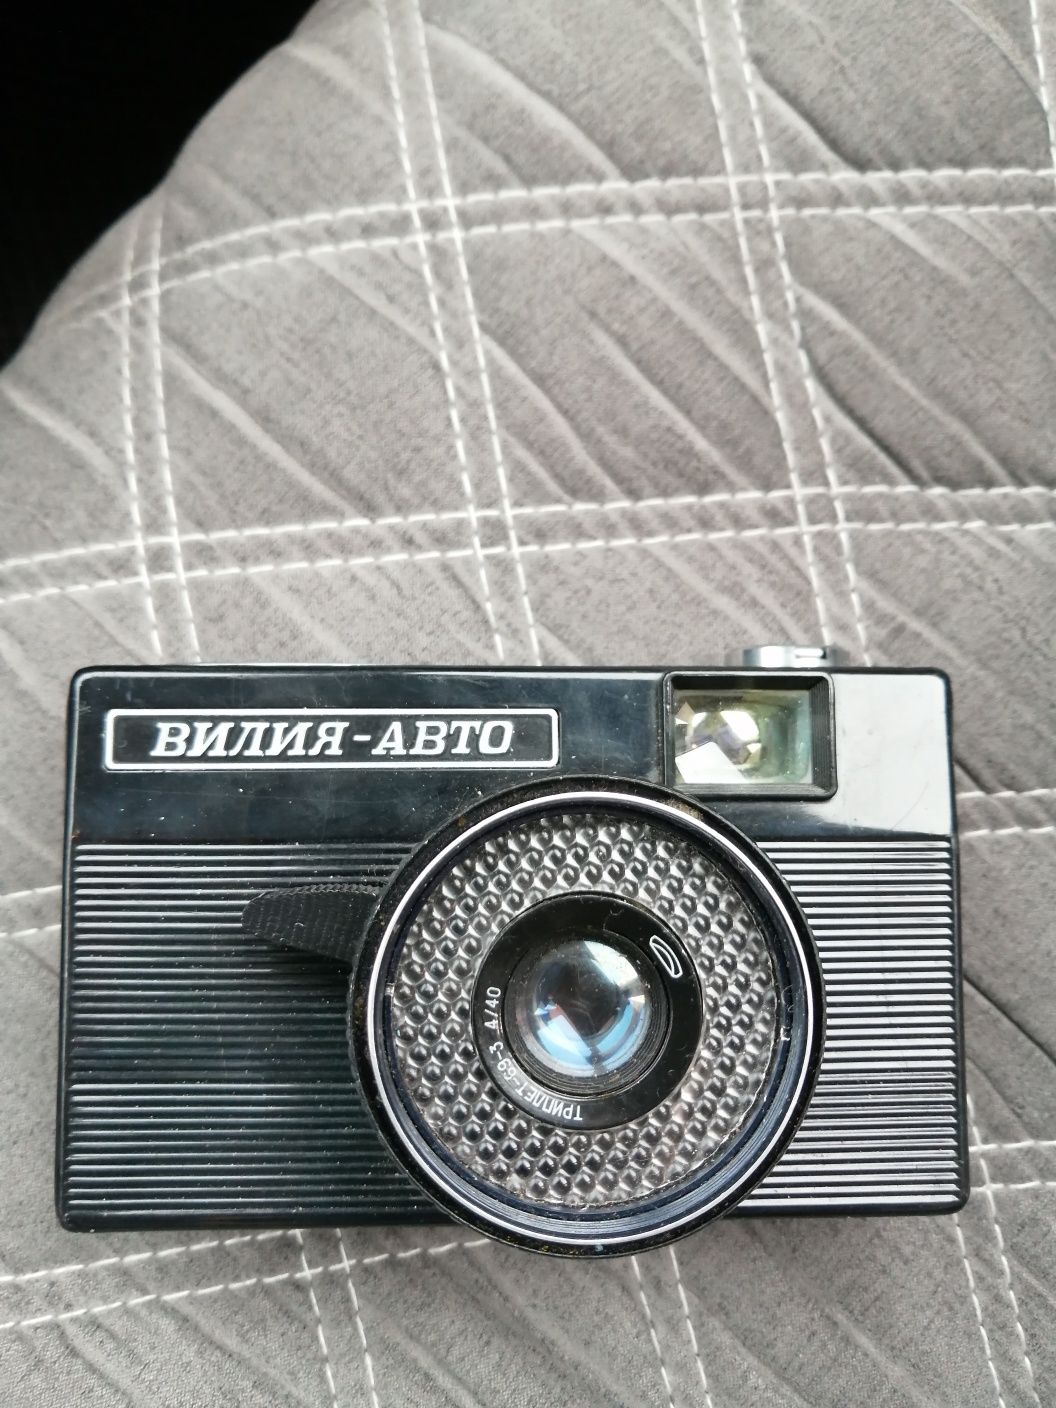 Продам советский фотоаппарат Вилия - Авто